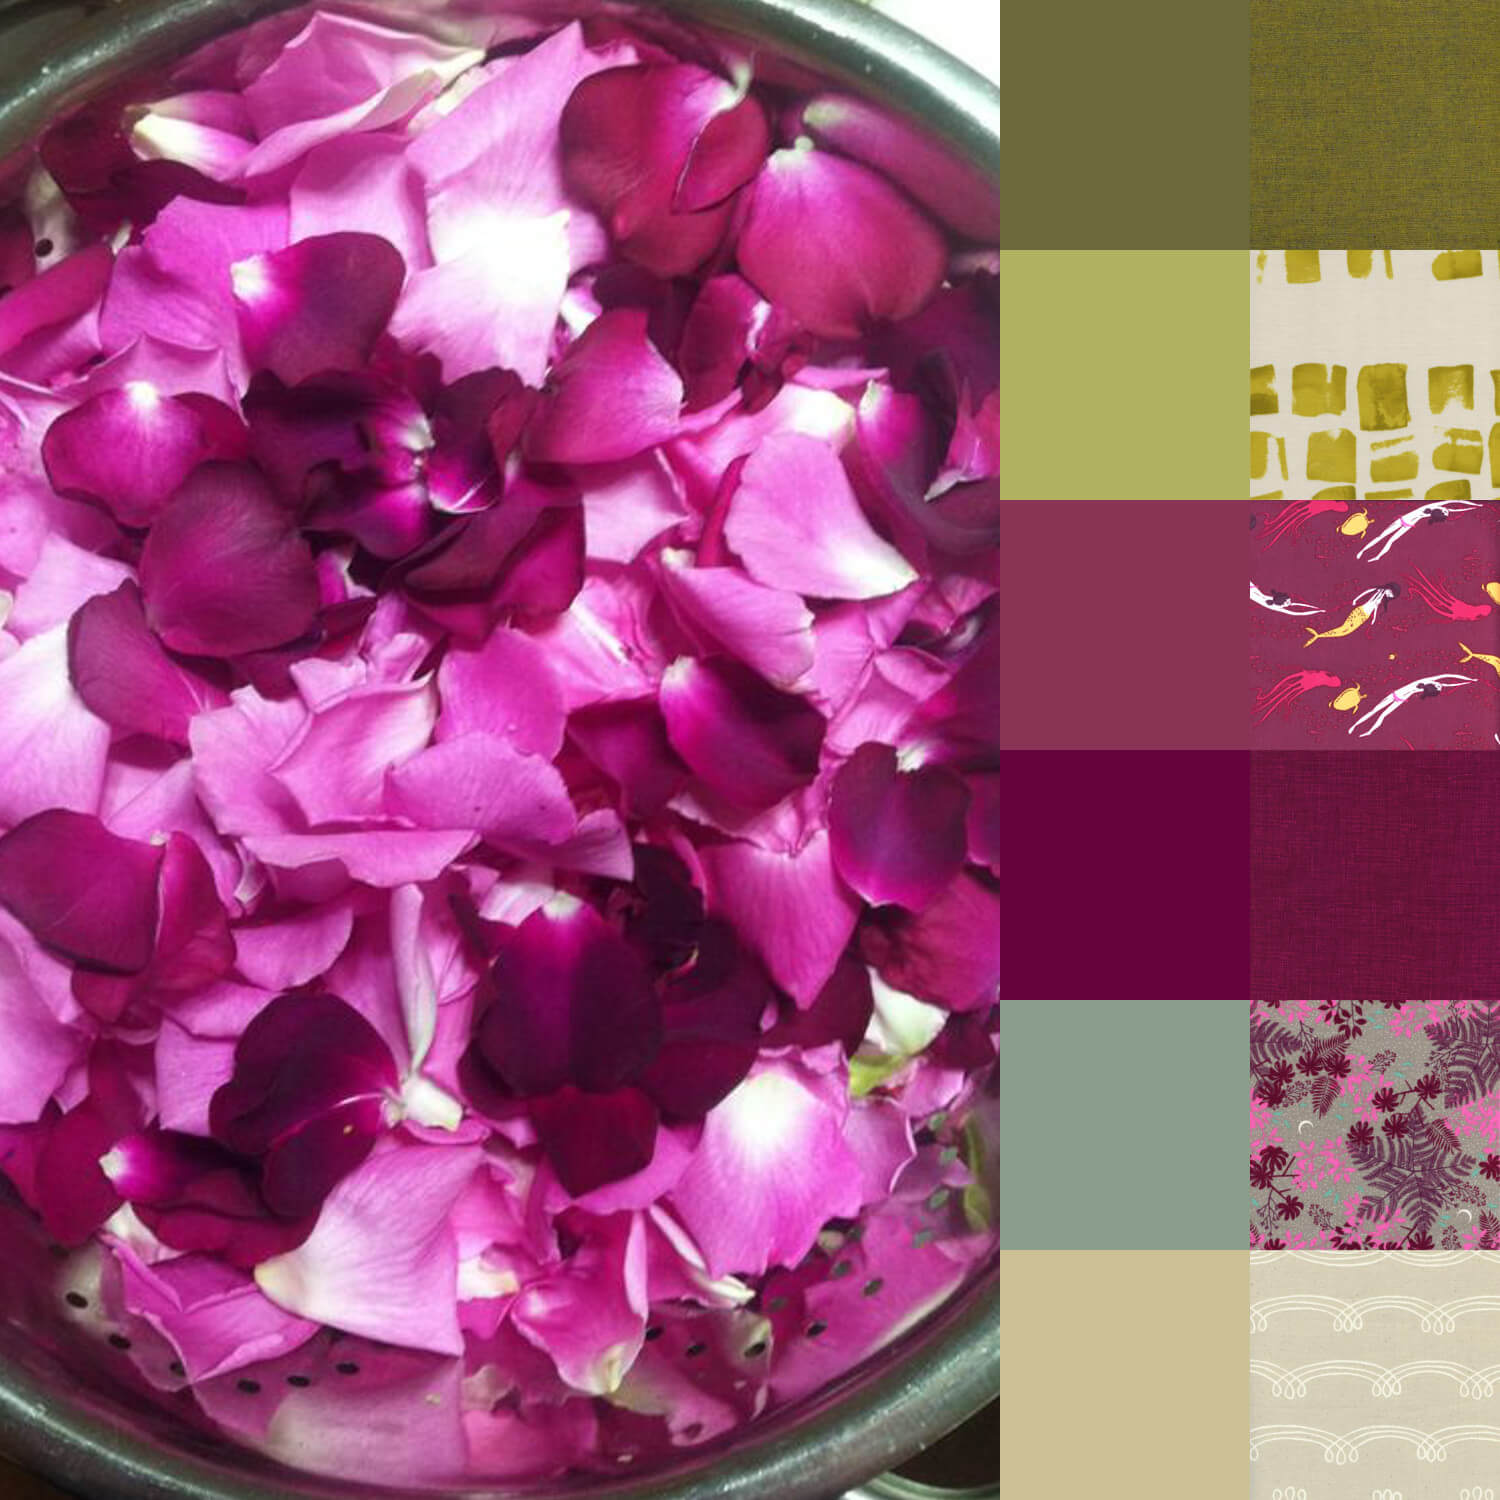 Rose Petals Palette and Bundle